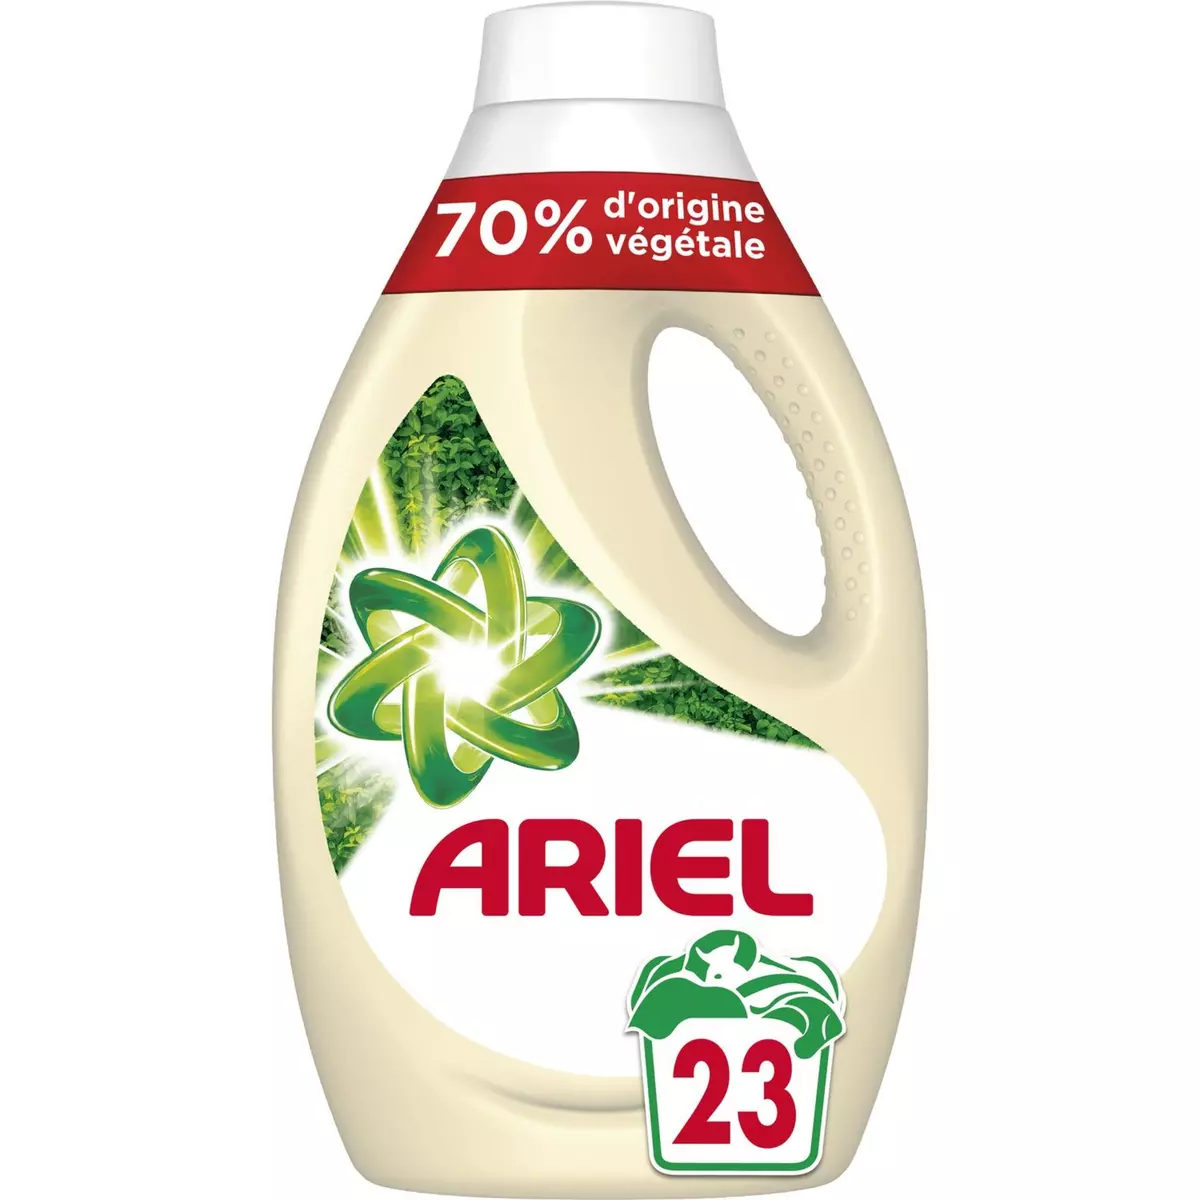 ARIEL Lessive liquide d'origine 70% végétale 23 lavages 1,265l